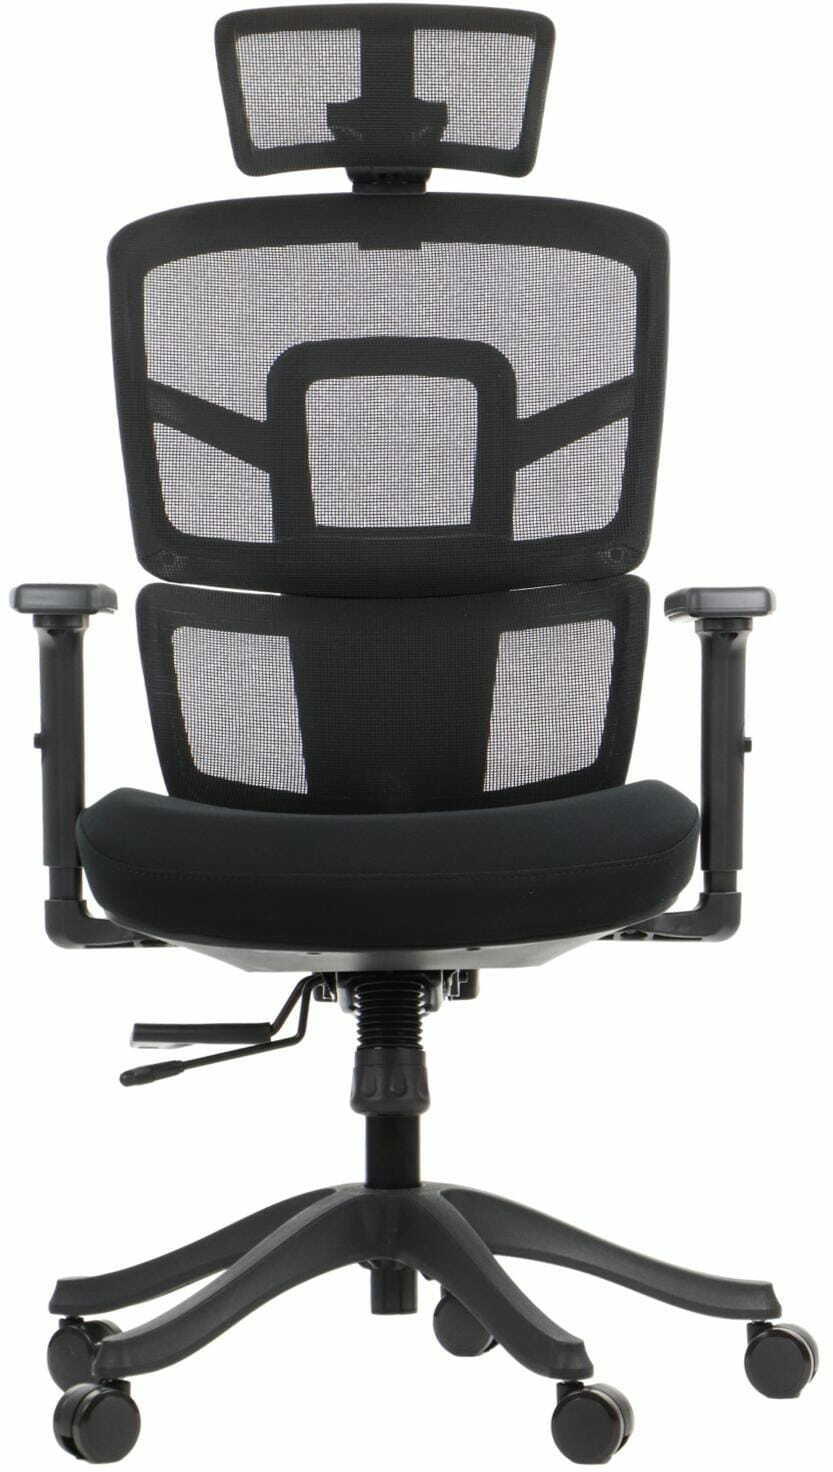 Ergonomiczne krzesło biurowe TREX CZARNY - wysuw siedziska, regulowane podłokietniki i zagłówek, oparcie siatkowe, podstawa nylonowa - krzesło obrotowe do 8-godzinnej pracy